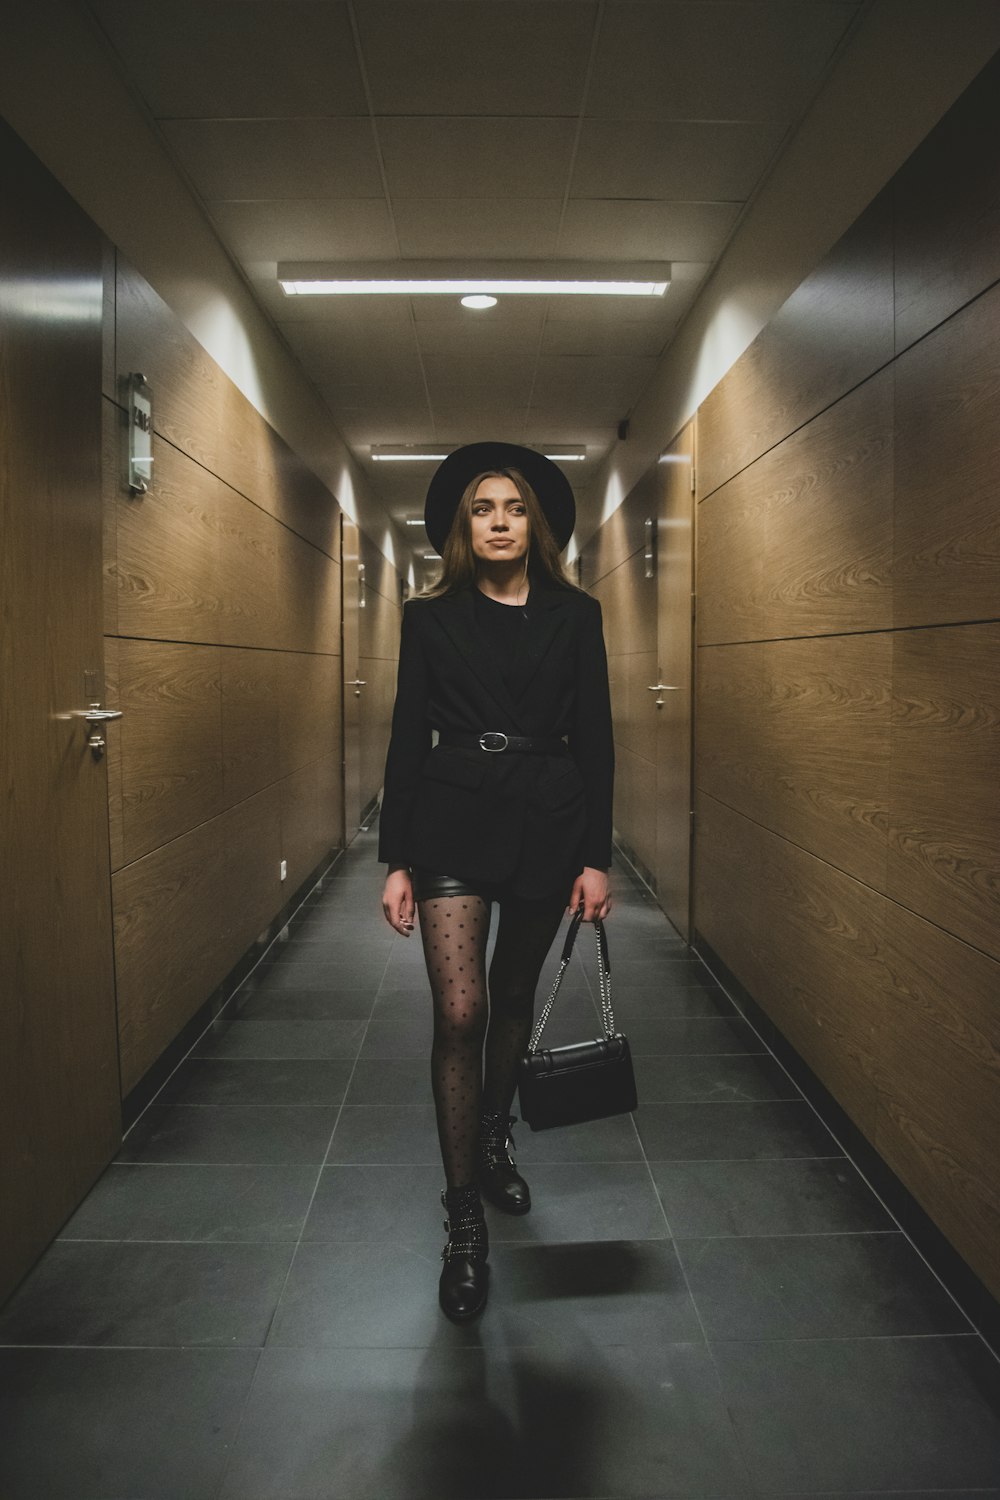 Eine Frau in schwarzem Kleid und Hut geht einen Flur entlang